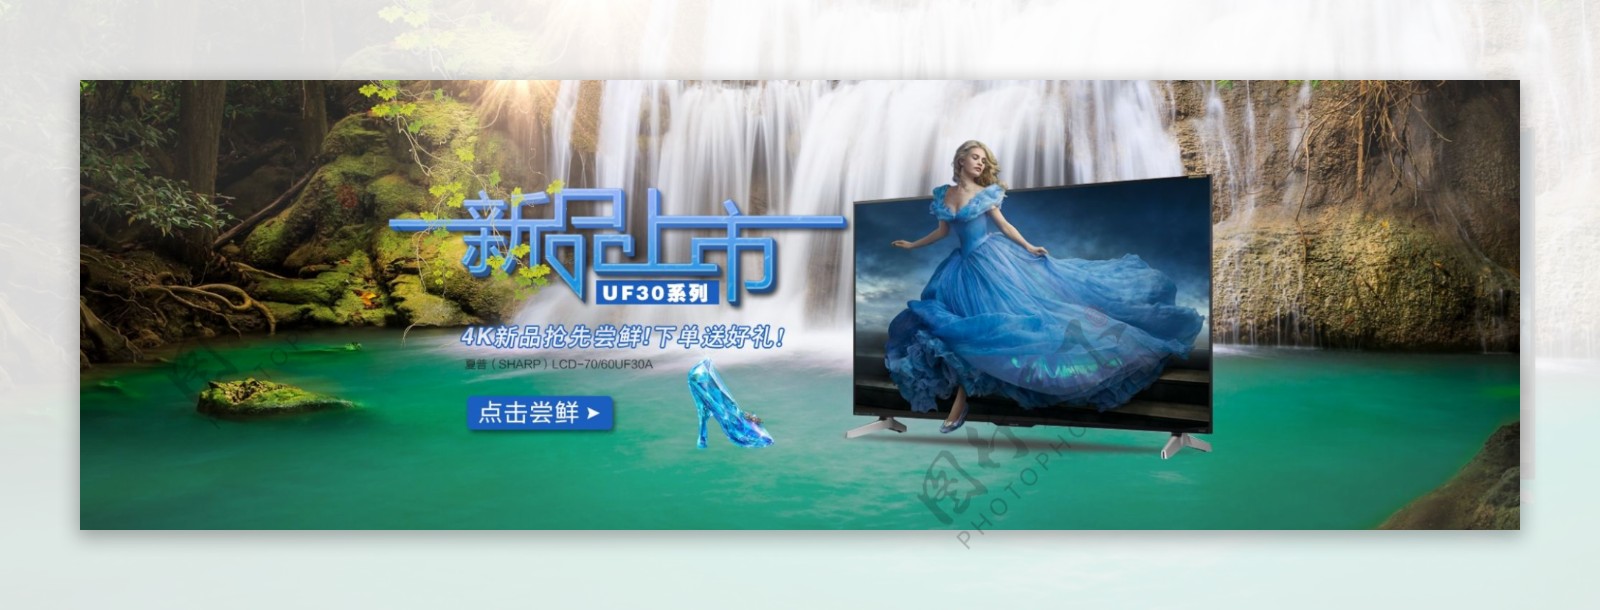 新品上市液晶电视促销海报广告